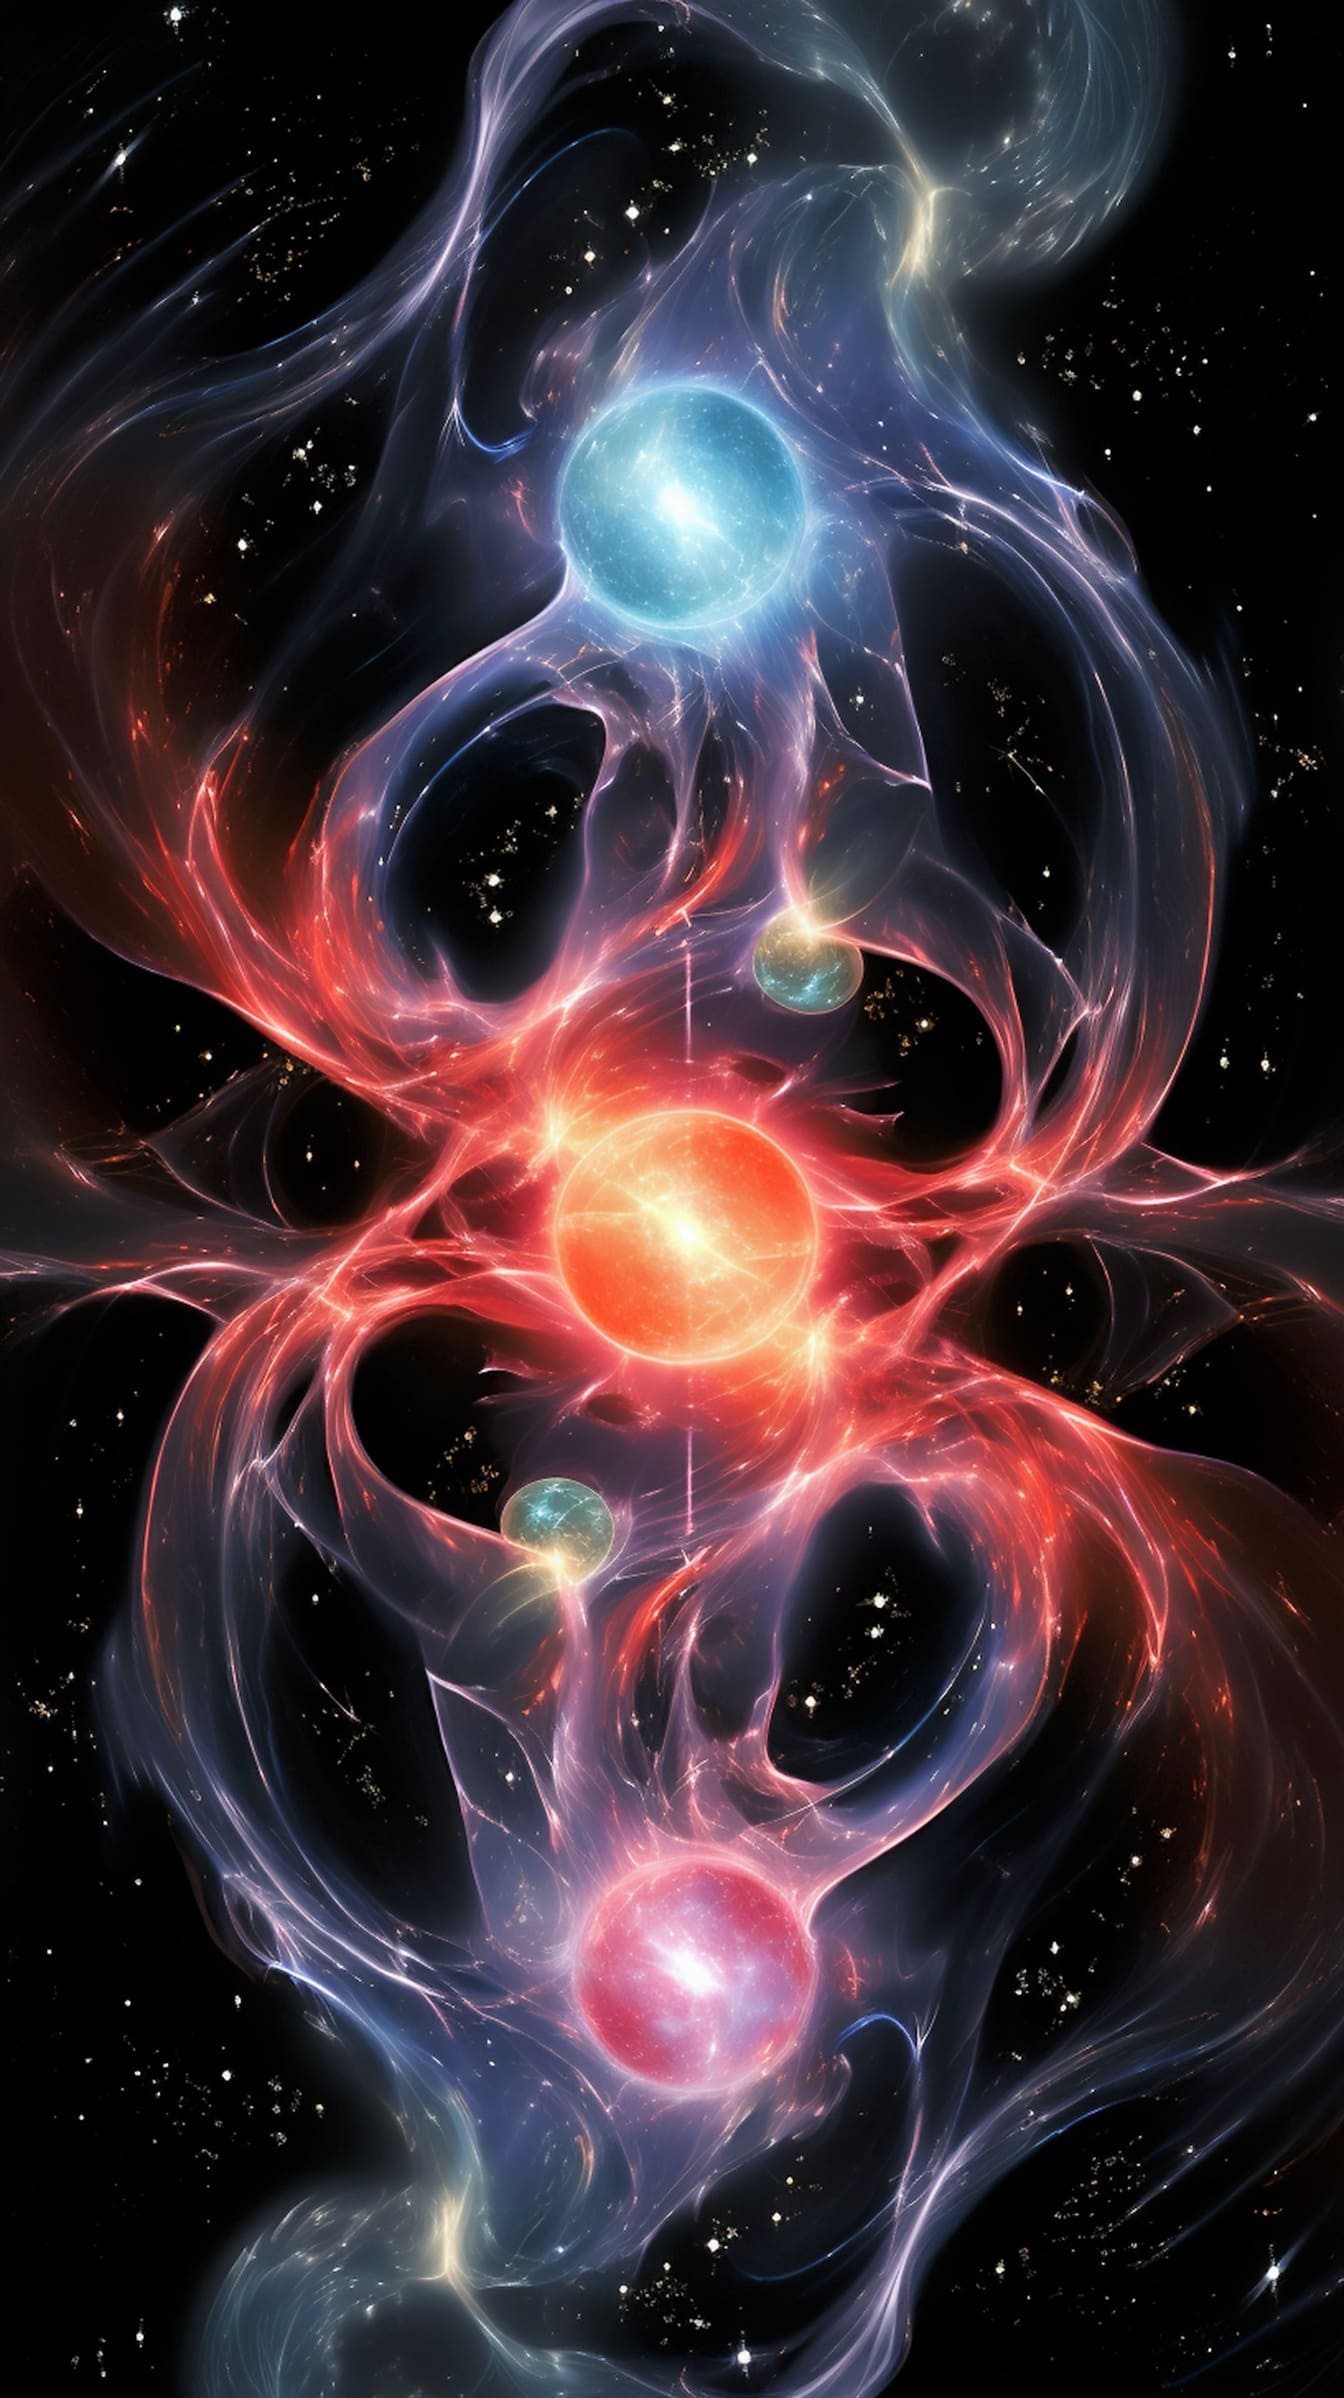 ภาพประกอบพลังงานไดนามิกจักรวาลพลาสมาอันยิ่งใหญ่